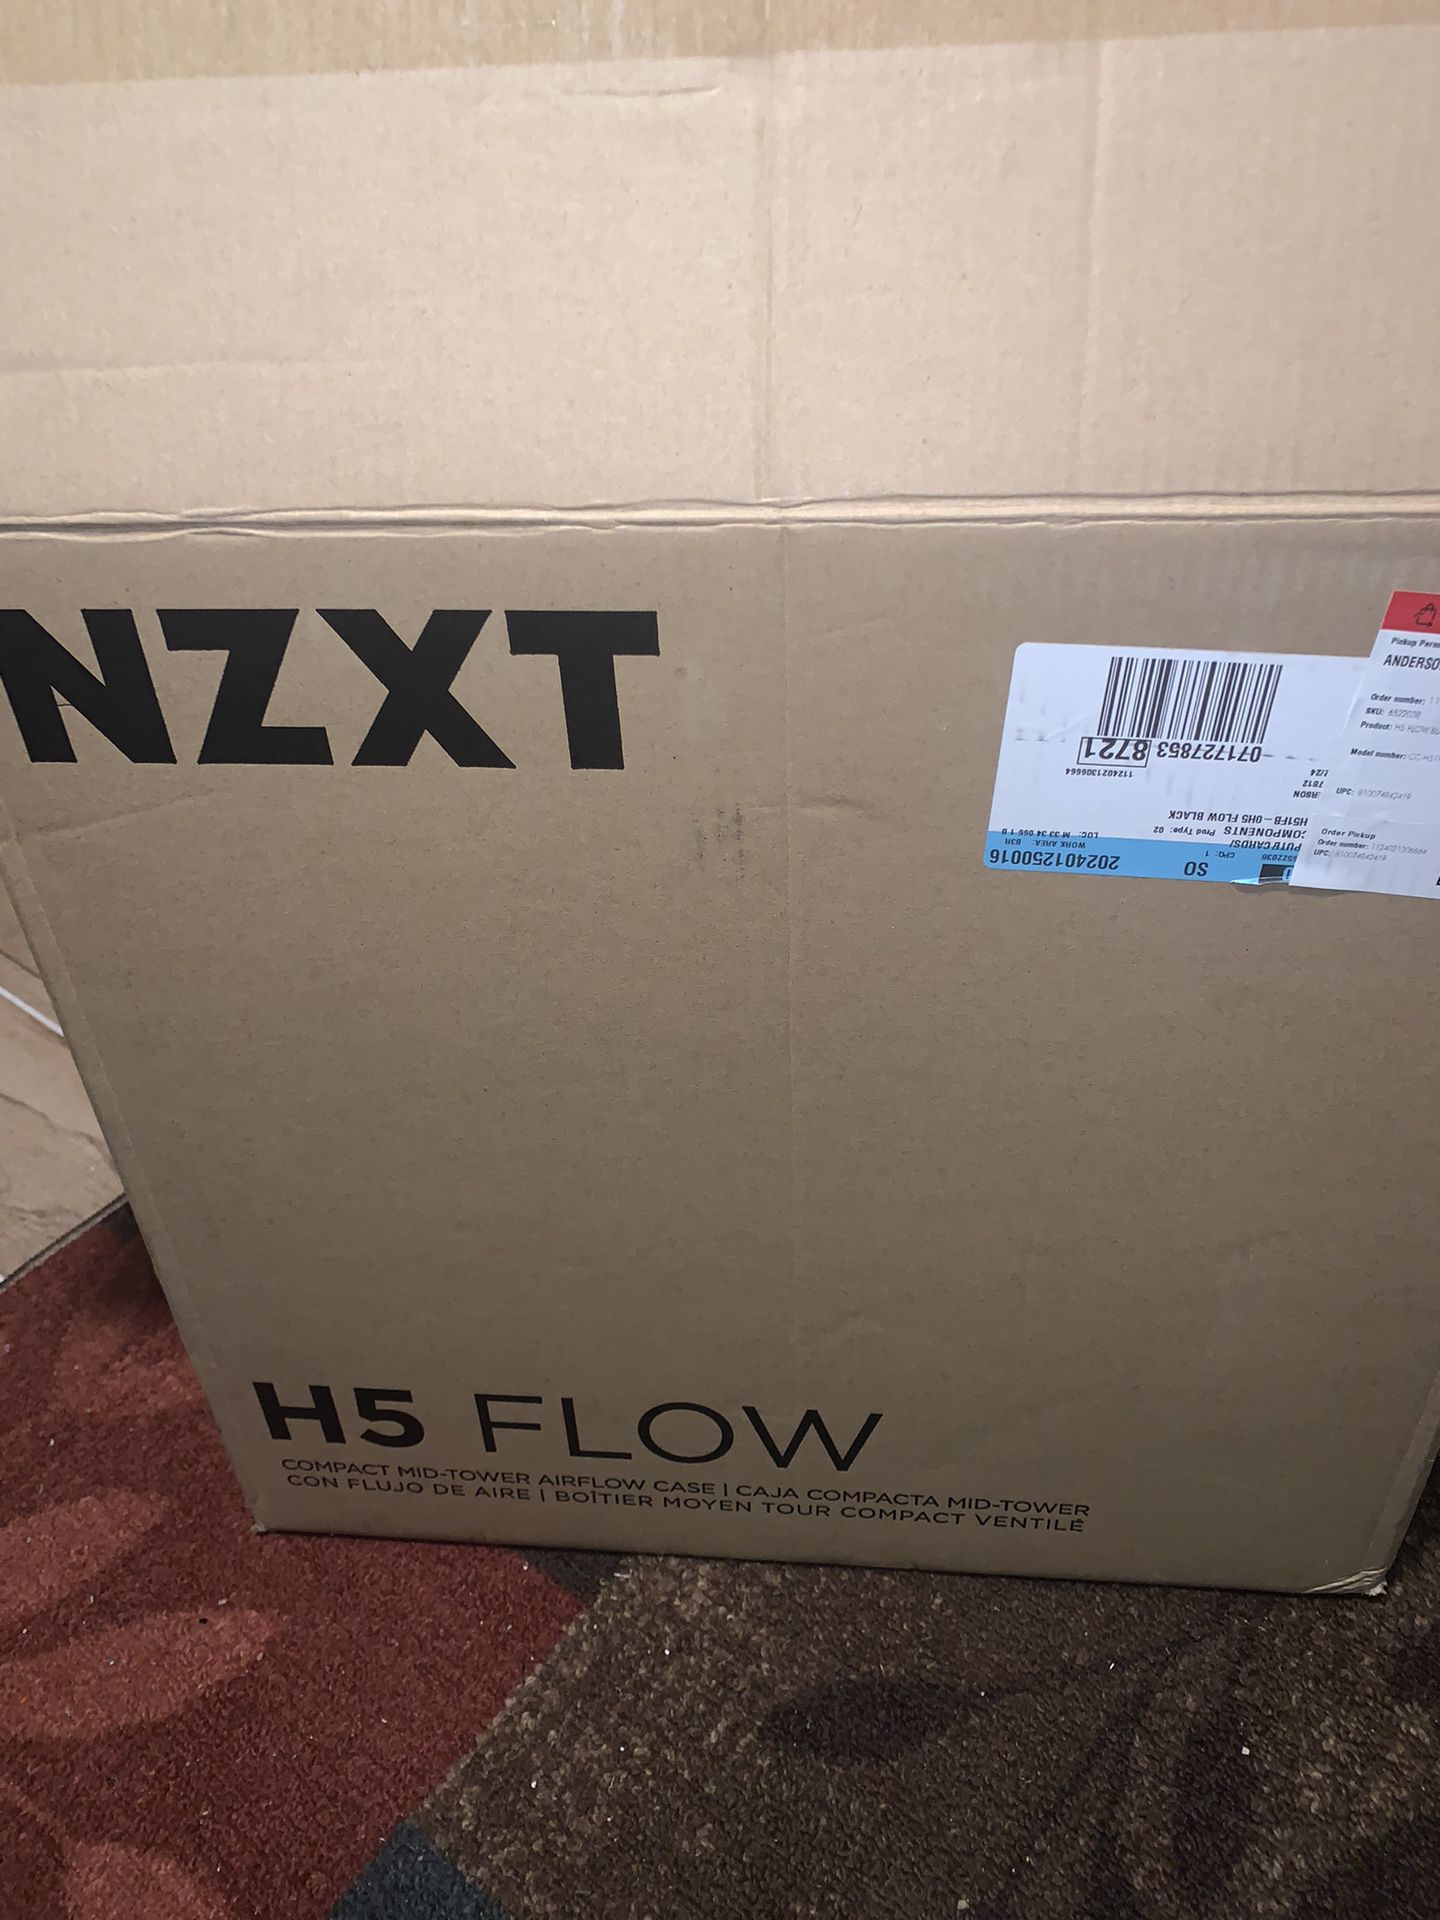 Nzxt H5 Flow Case